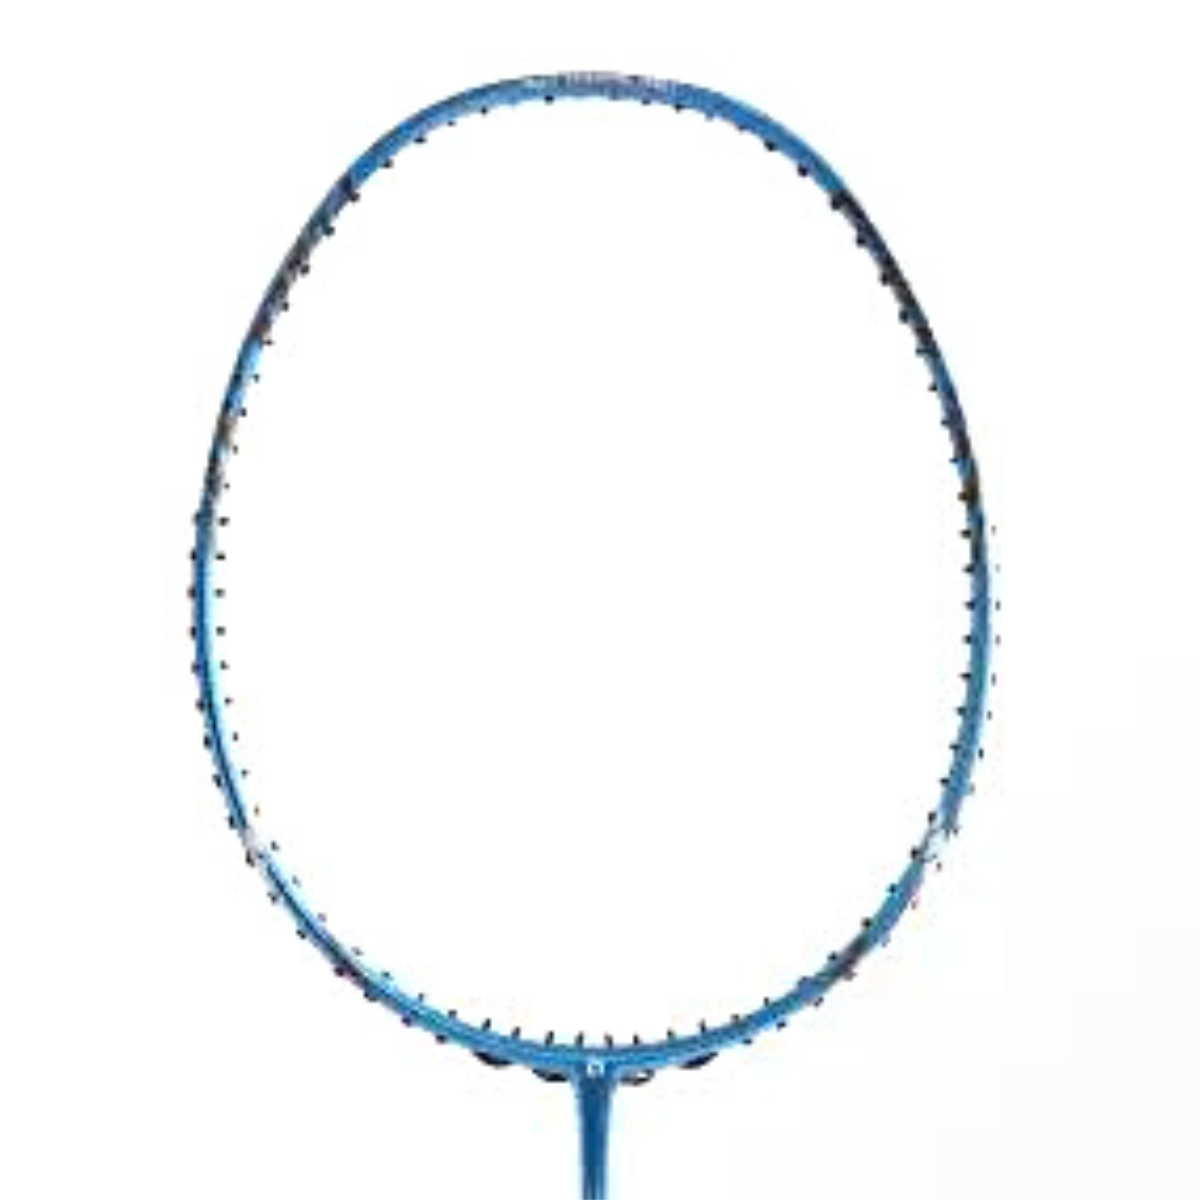 Apacs Finapi 232 Badminton Racket  - Unstrung